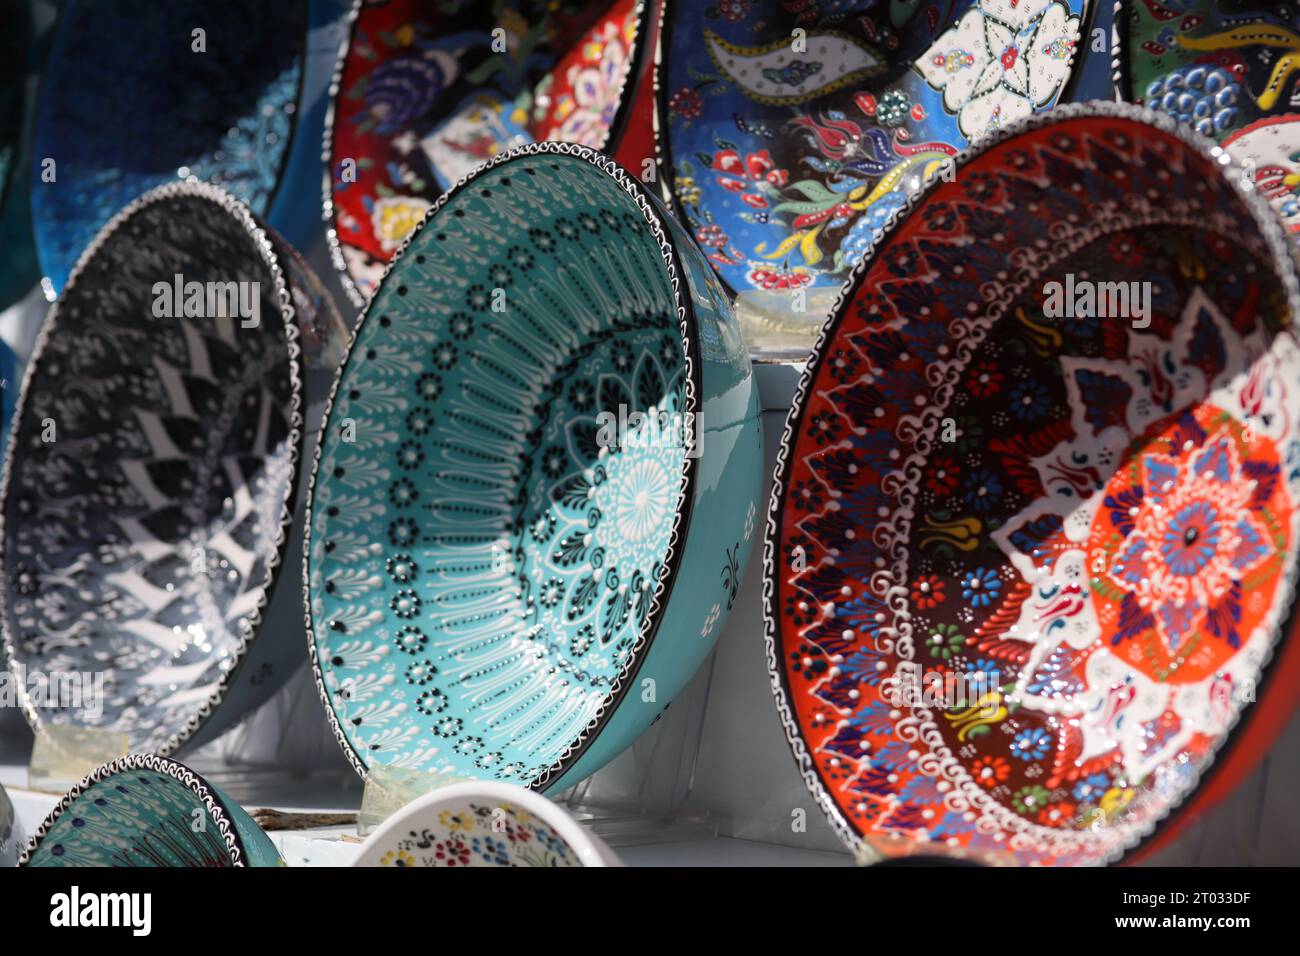 Reihen von wunderschönen, mehrfarbigen dekorativen Schalen mit verschiedenen Designs von sich wiederholenden und floralen Mustern, die auf weißen Regalen von der Seite aus gesehen ausgestellt sind Stockfoto